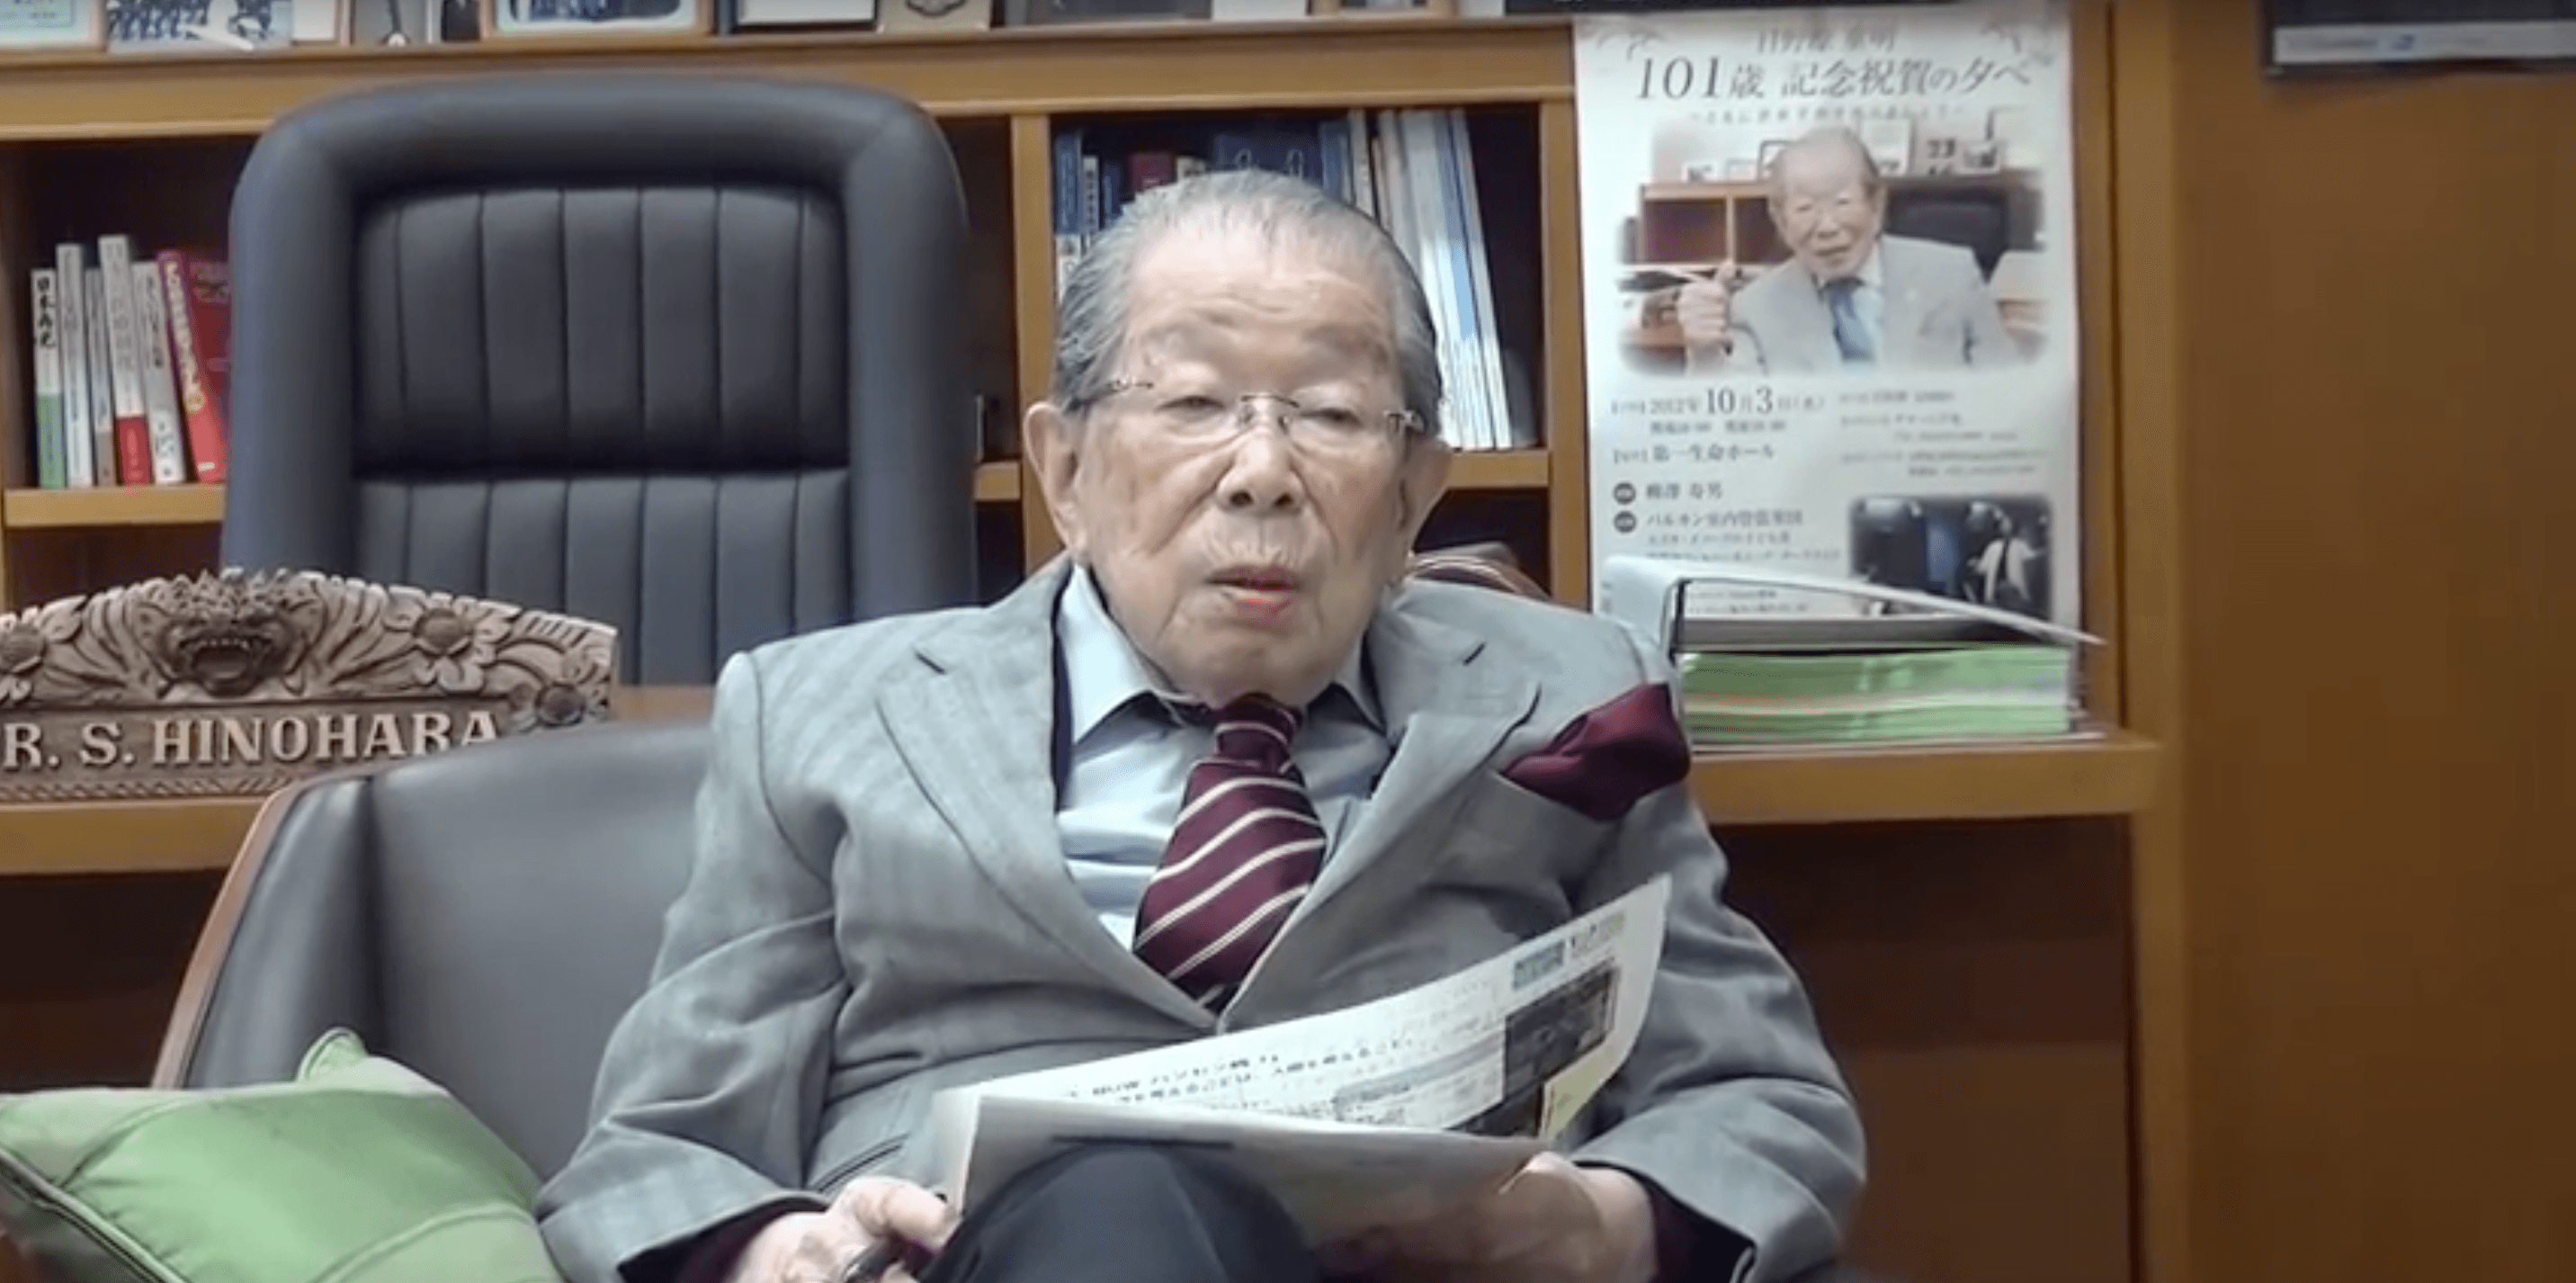 Hinohara: Predstavio nekoliko smjernica za dug i zdrav život - Avaz